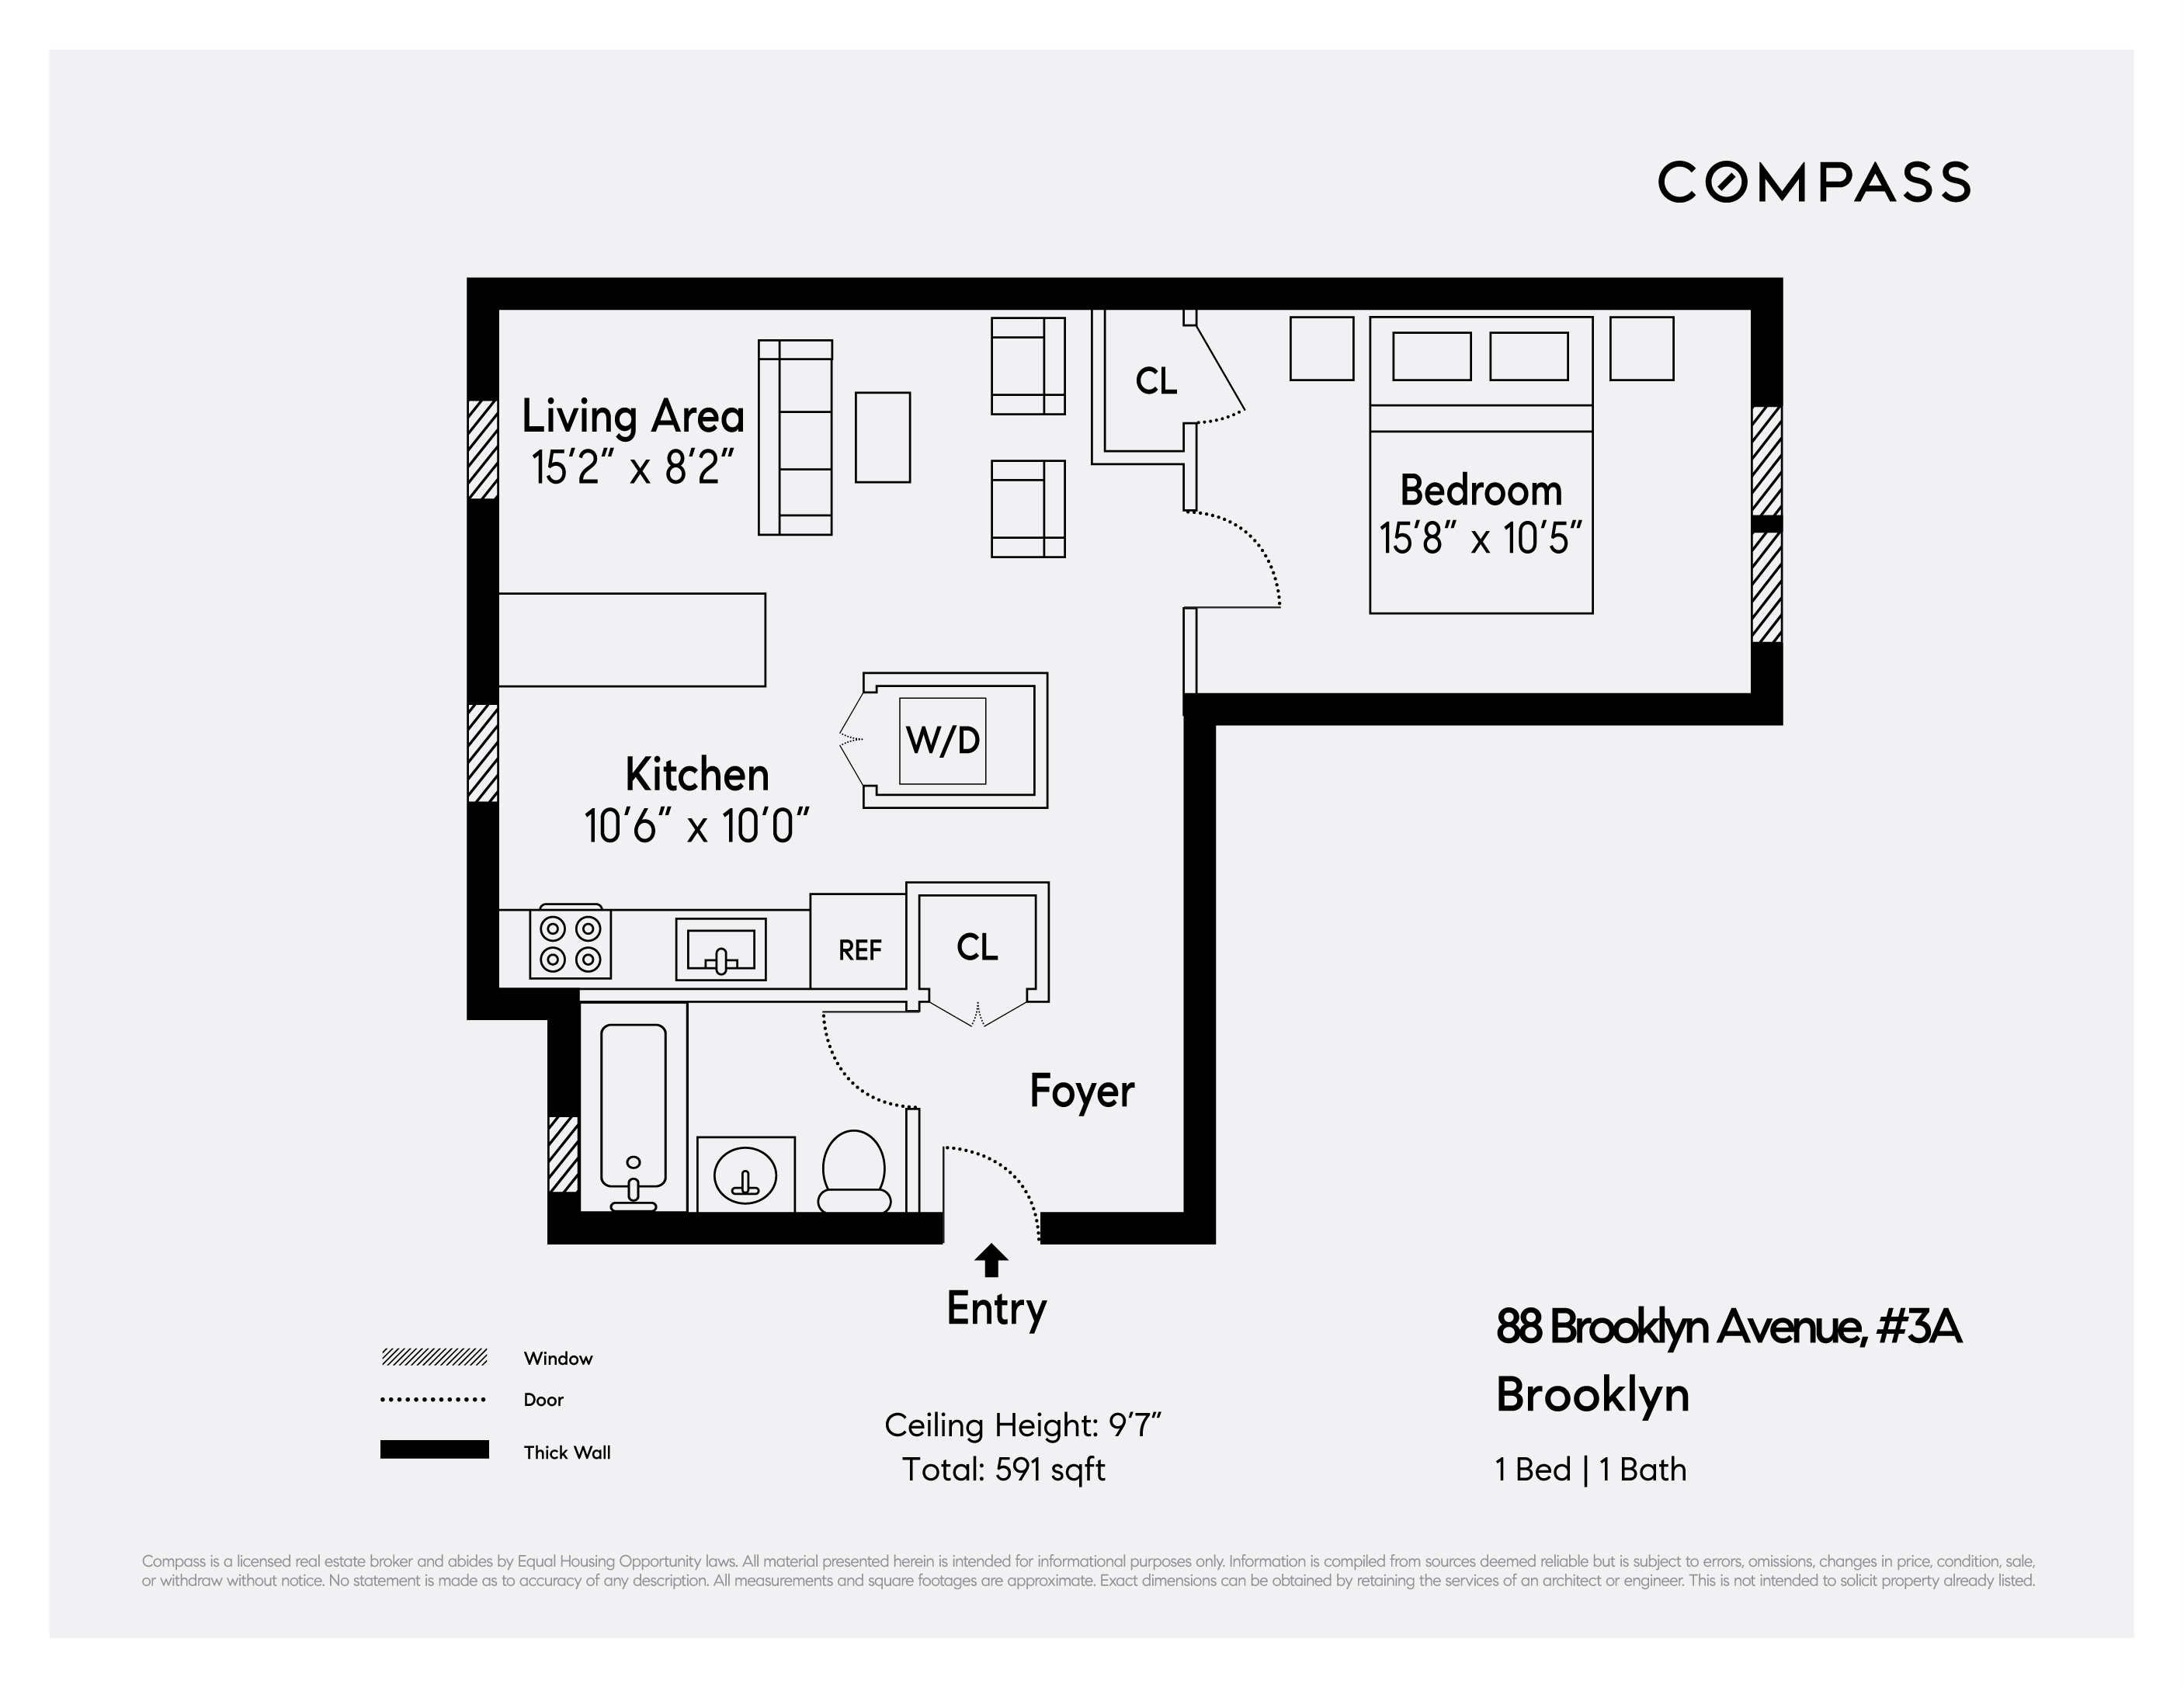 Floorplan for 88 Brooklyn Avenue, A3